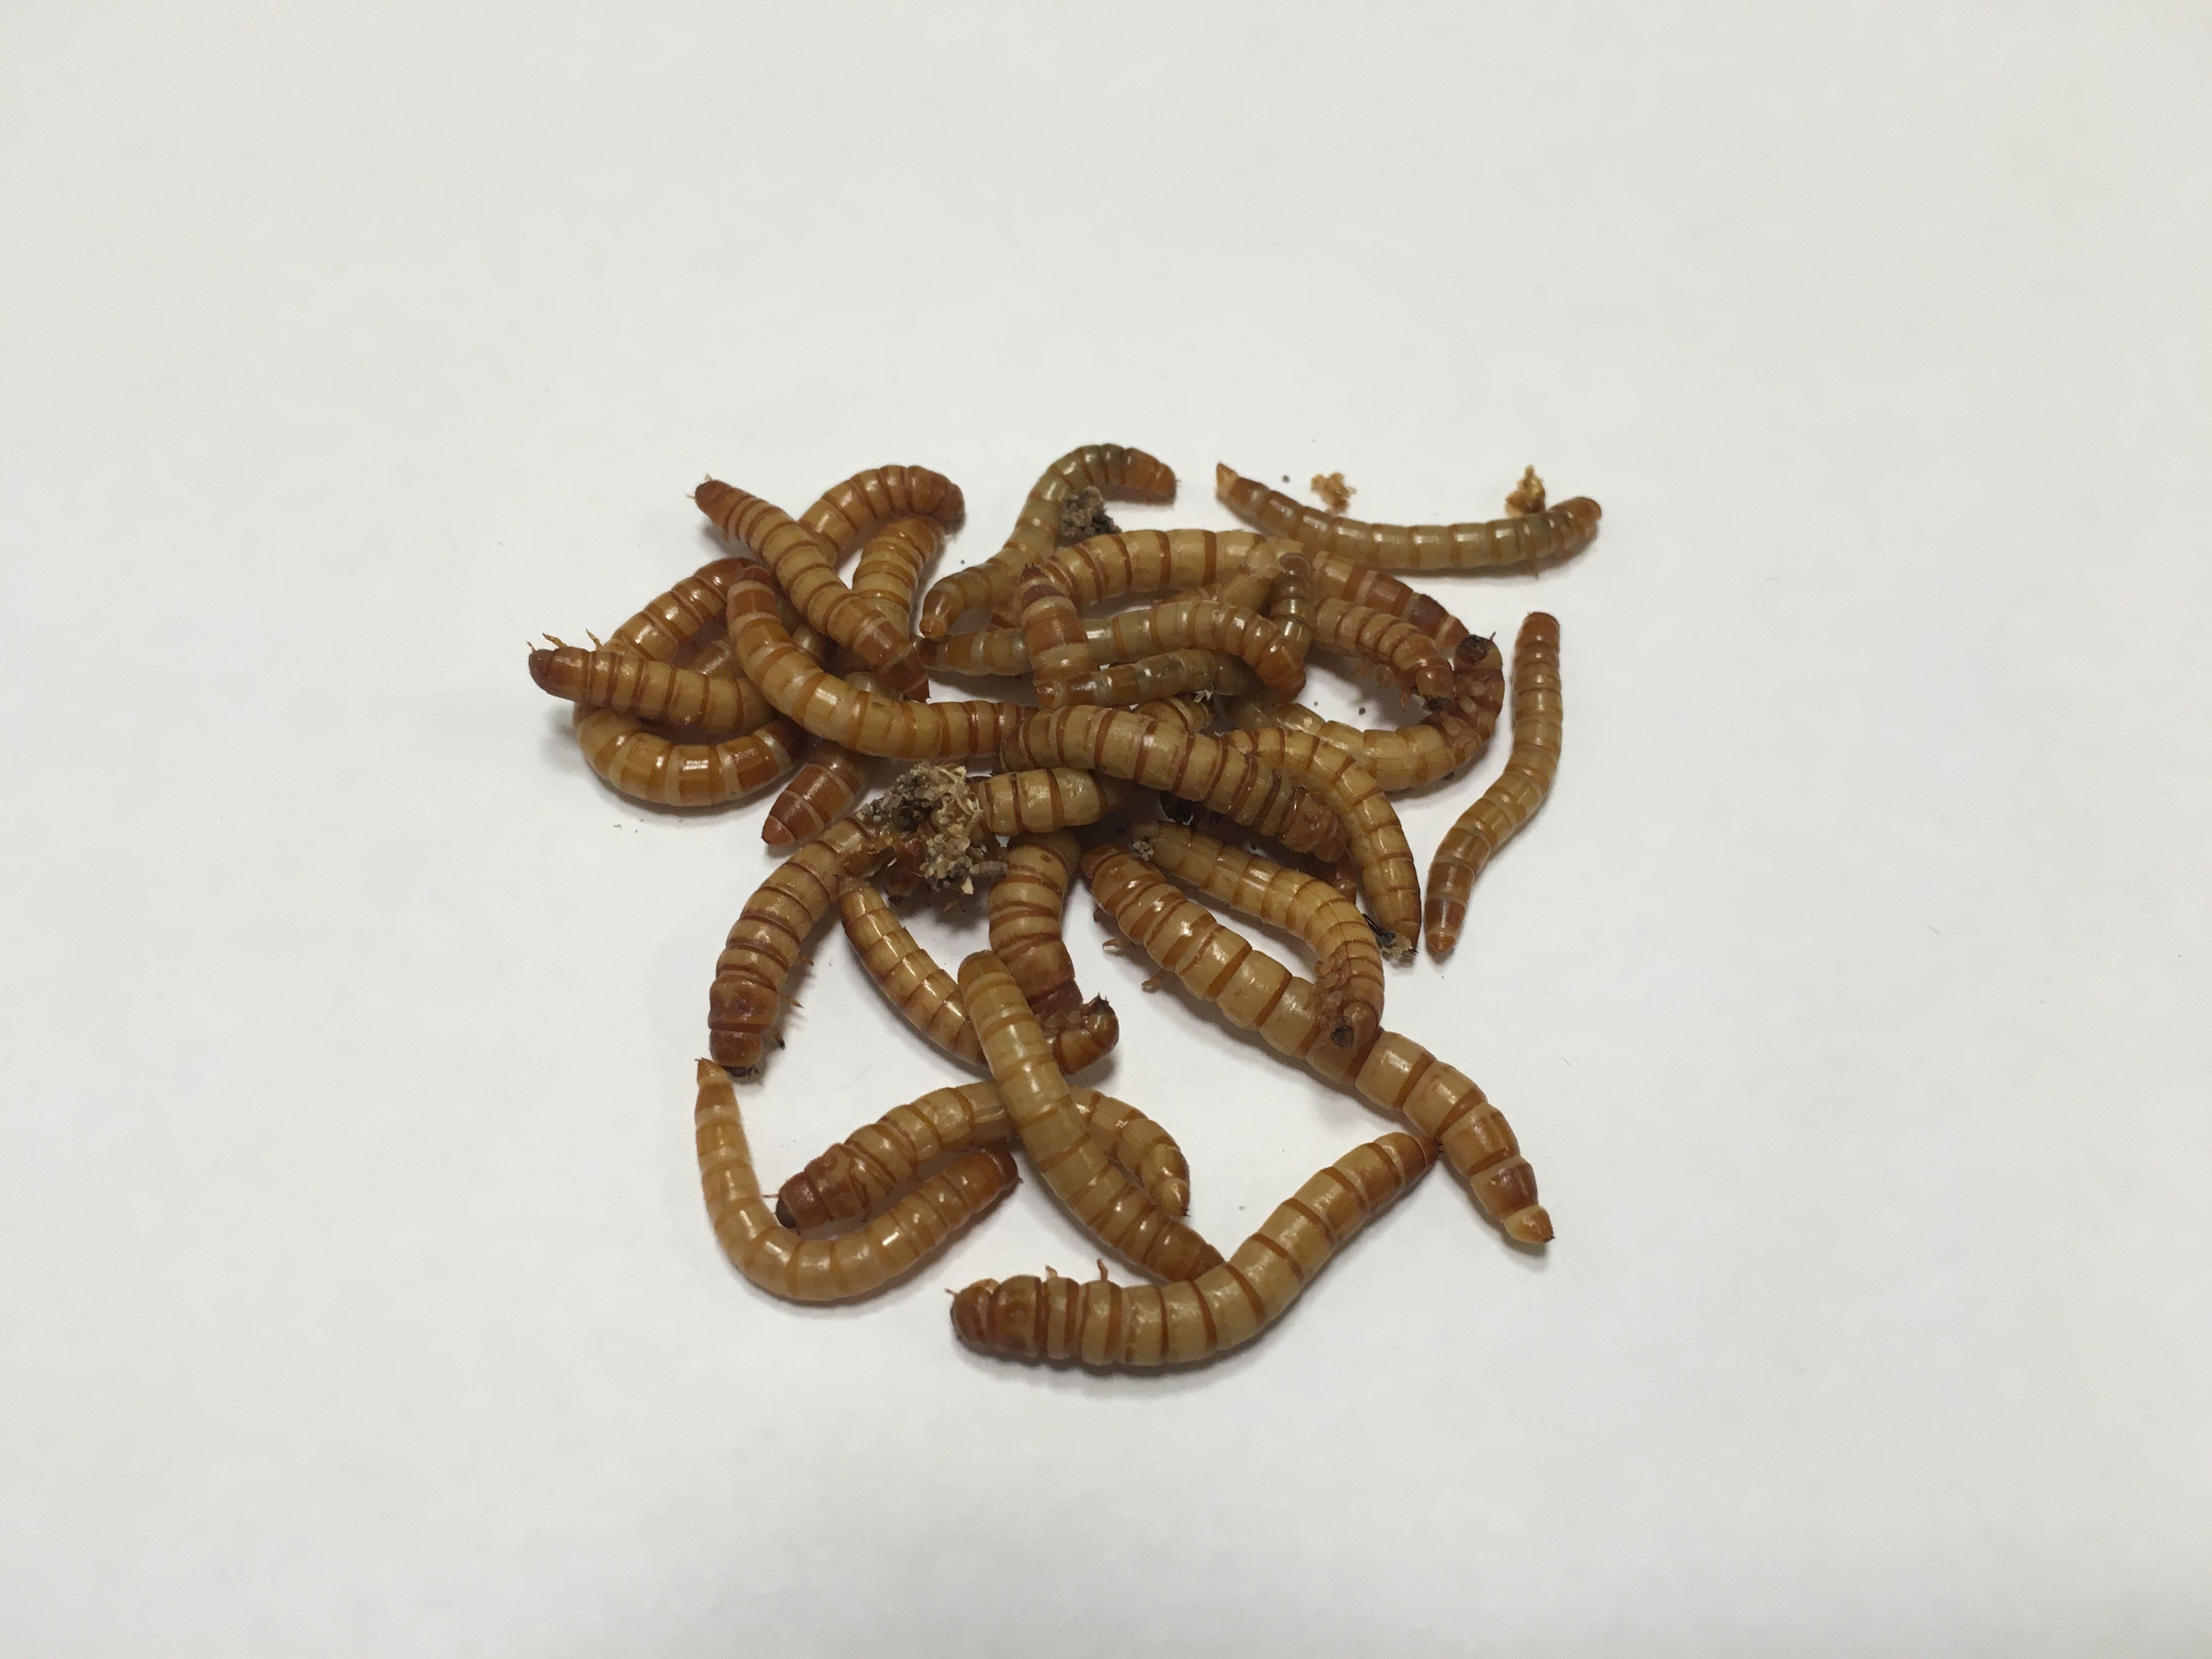 250 Ct Mealworms - Buckeye Organics